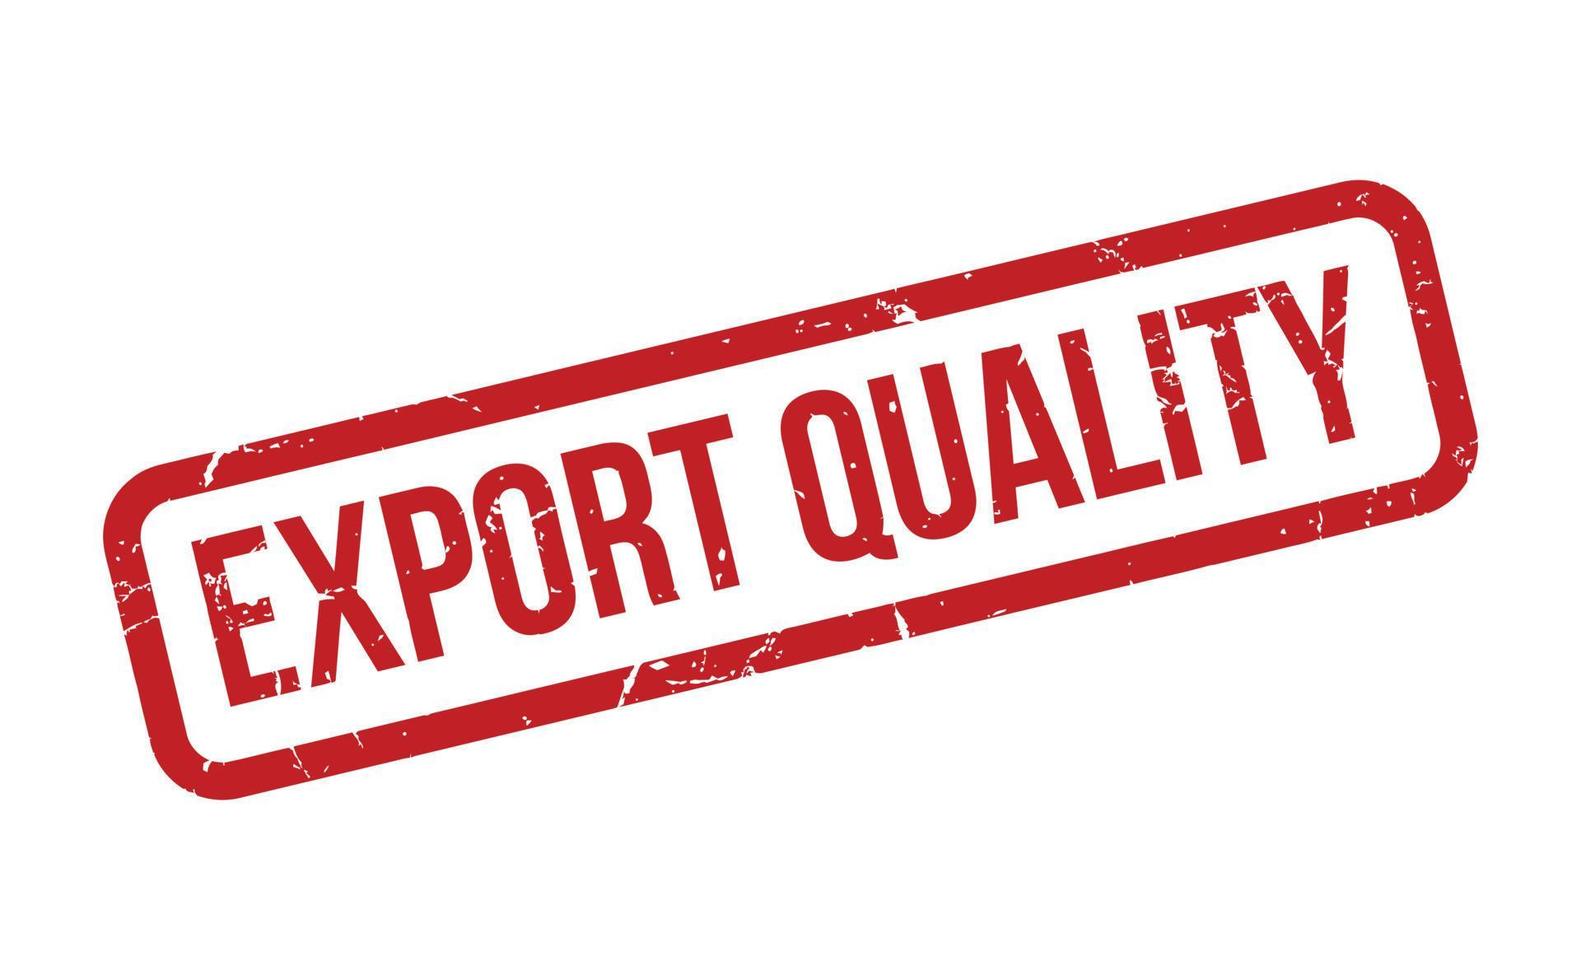 exportar calidad caucho estampilla. rojo exportar calidad caucho grunge sello sello vector ilustración - vector